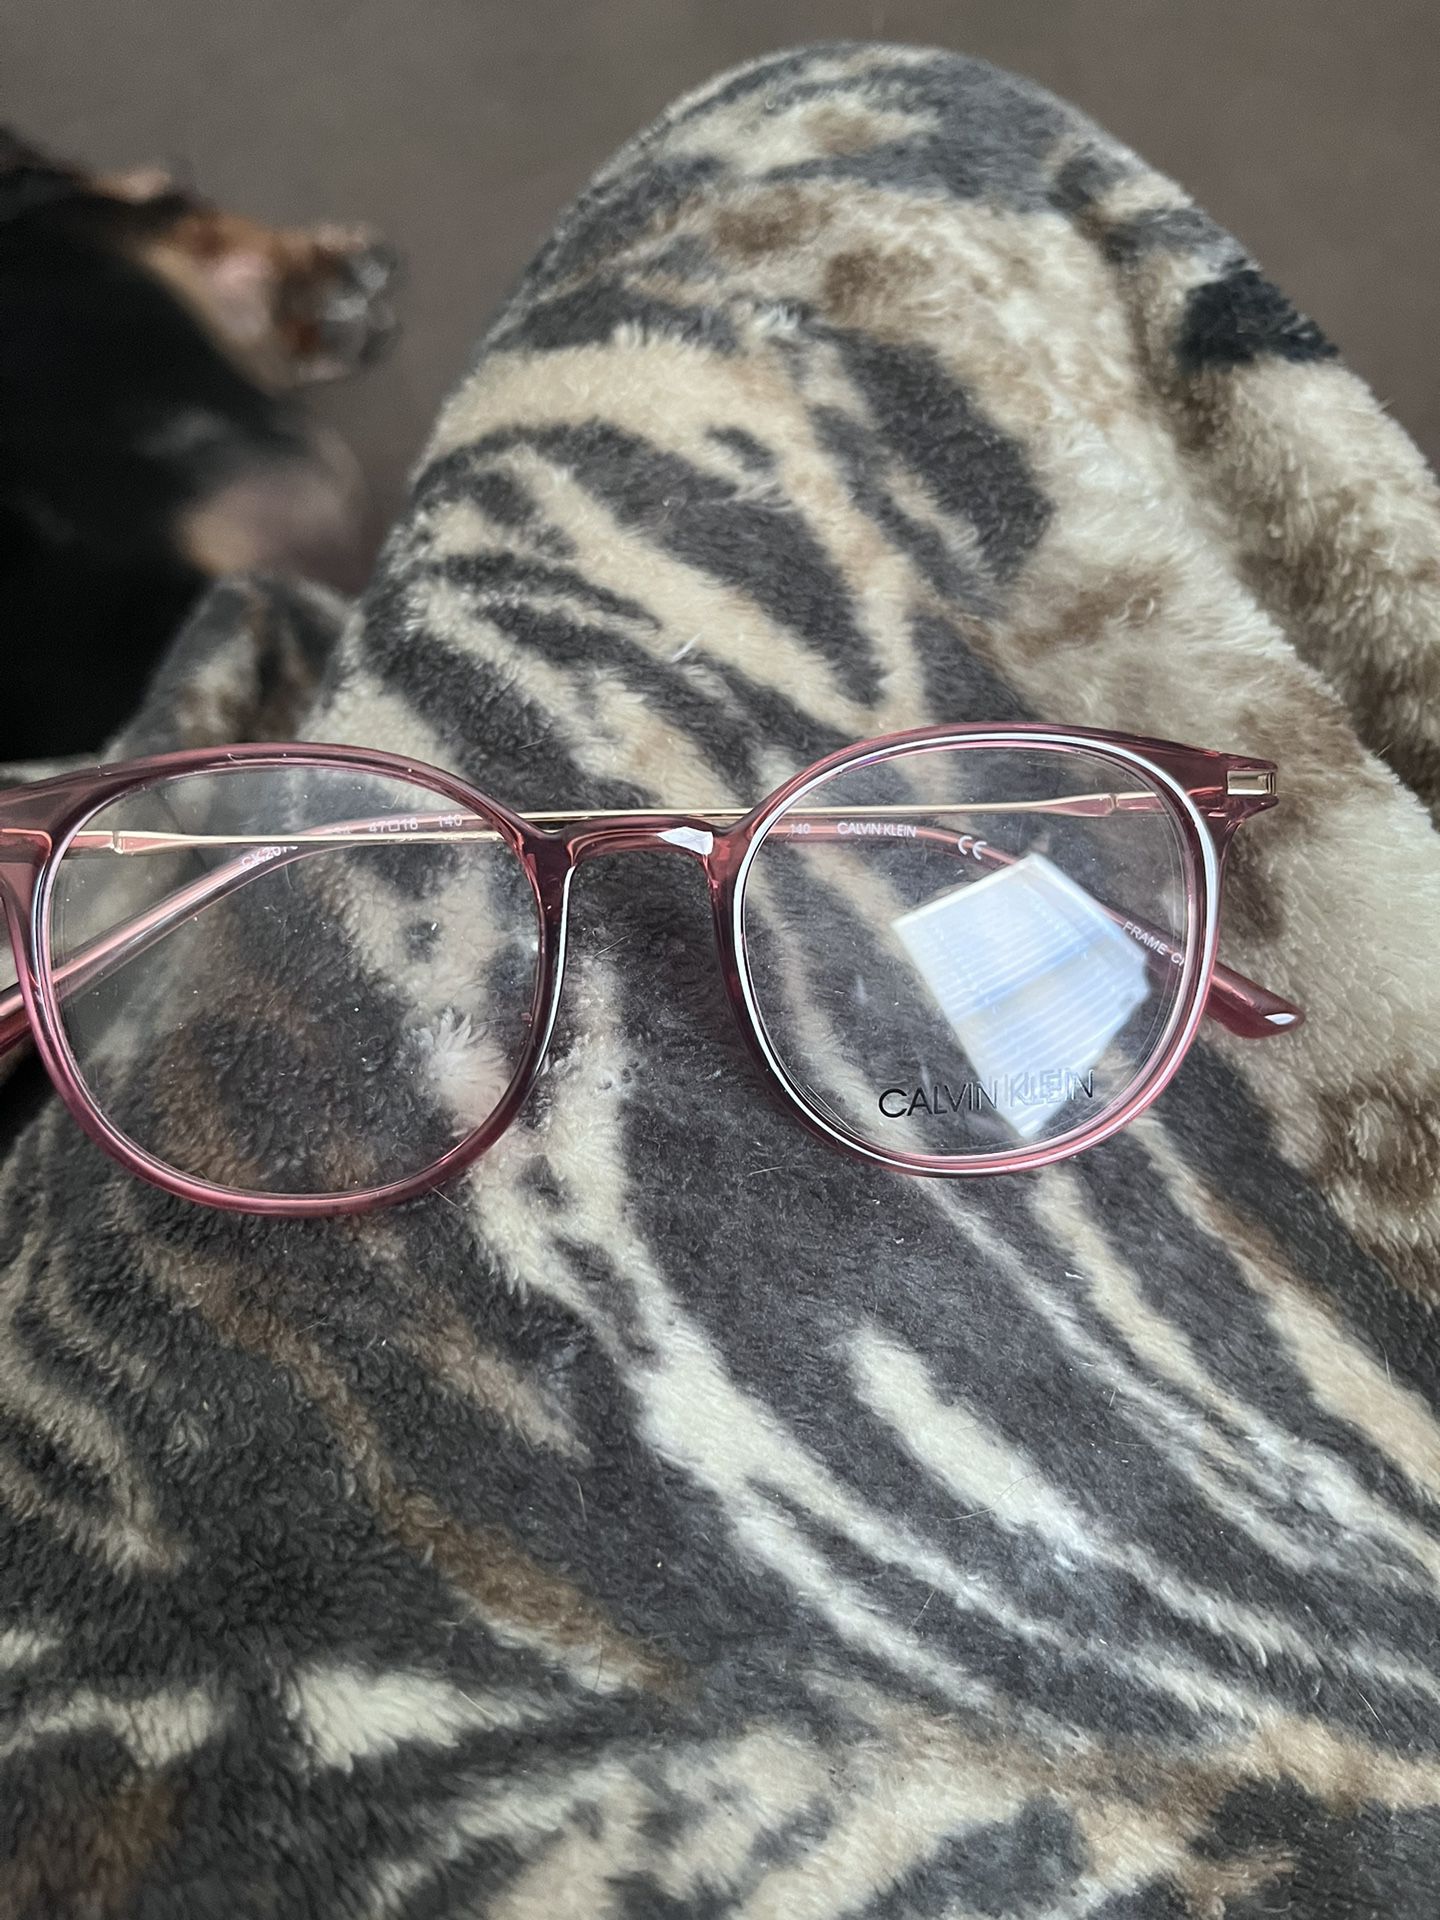 Calvin Klein Eyeglasses…Brand New